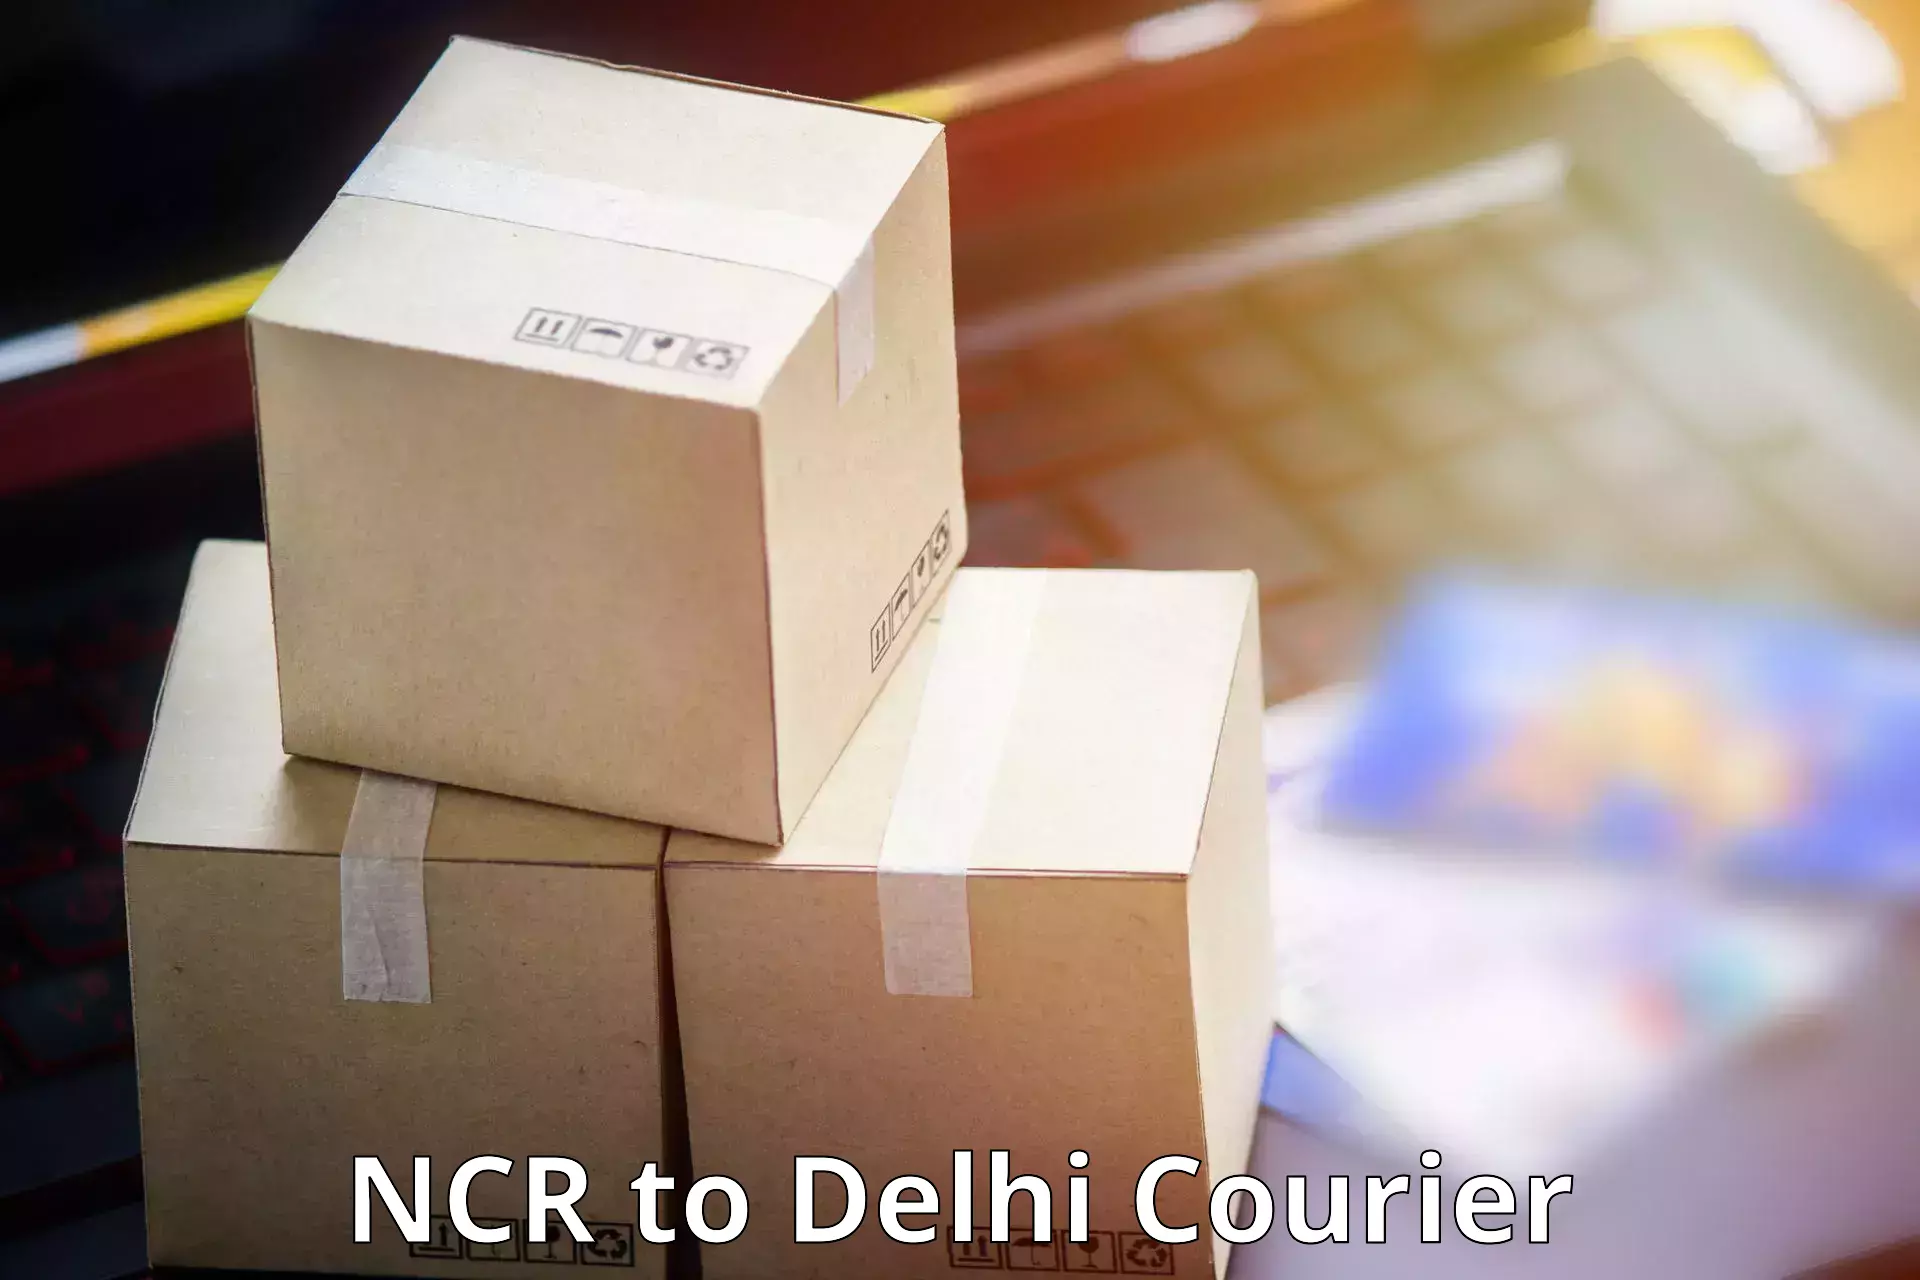 Urban courier service NCR to Kalkaji